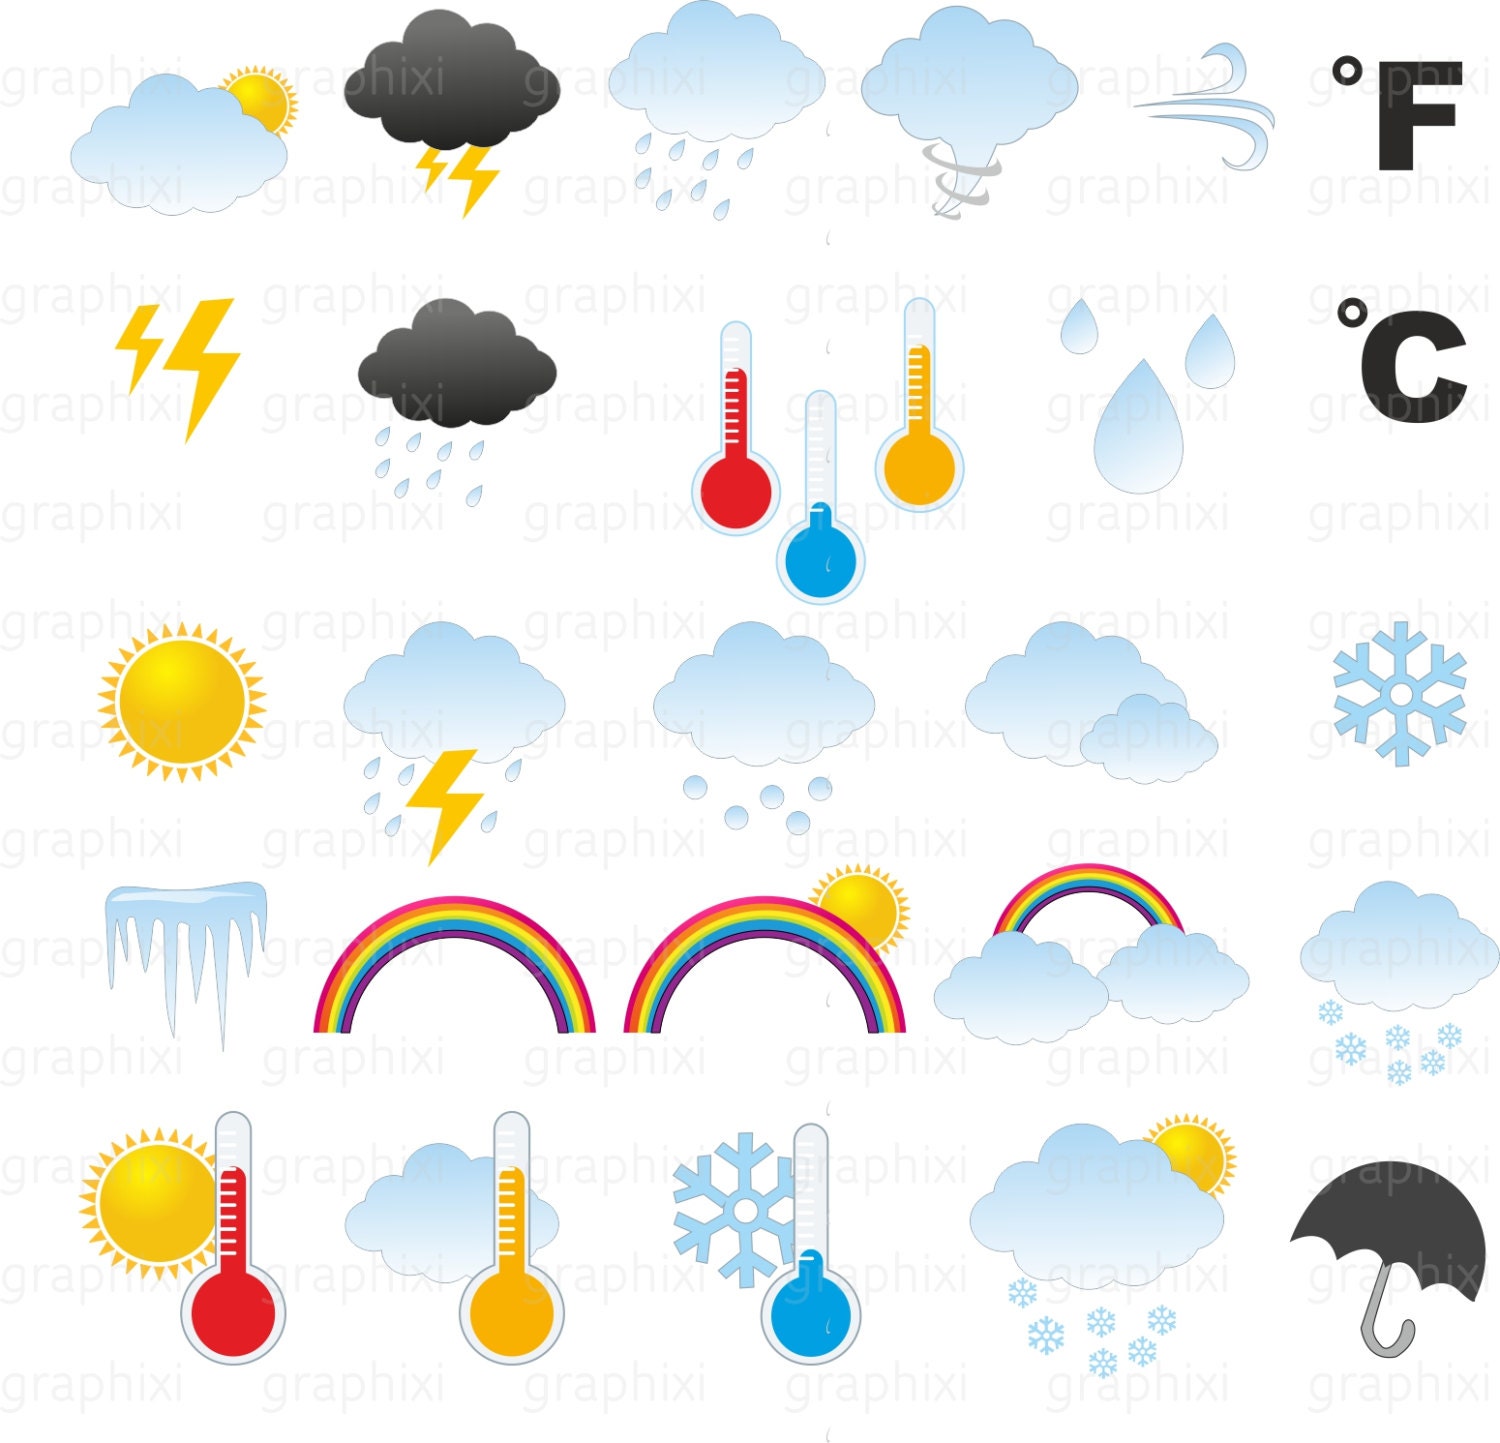 Погодные элементы. Элементы погоды. Элементы погоды картинка. Мини рисунки погода. Разная погода на одной картинке.